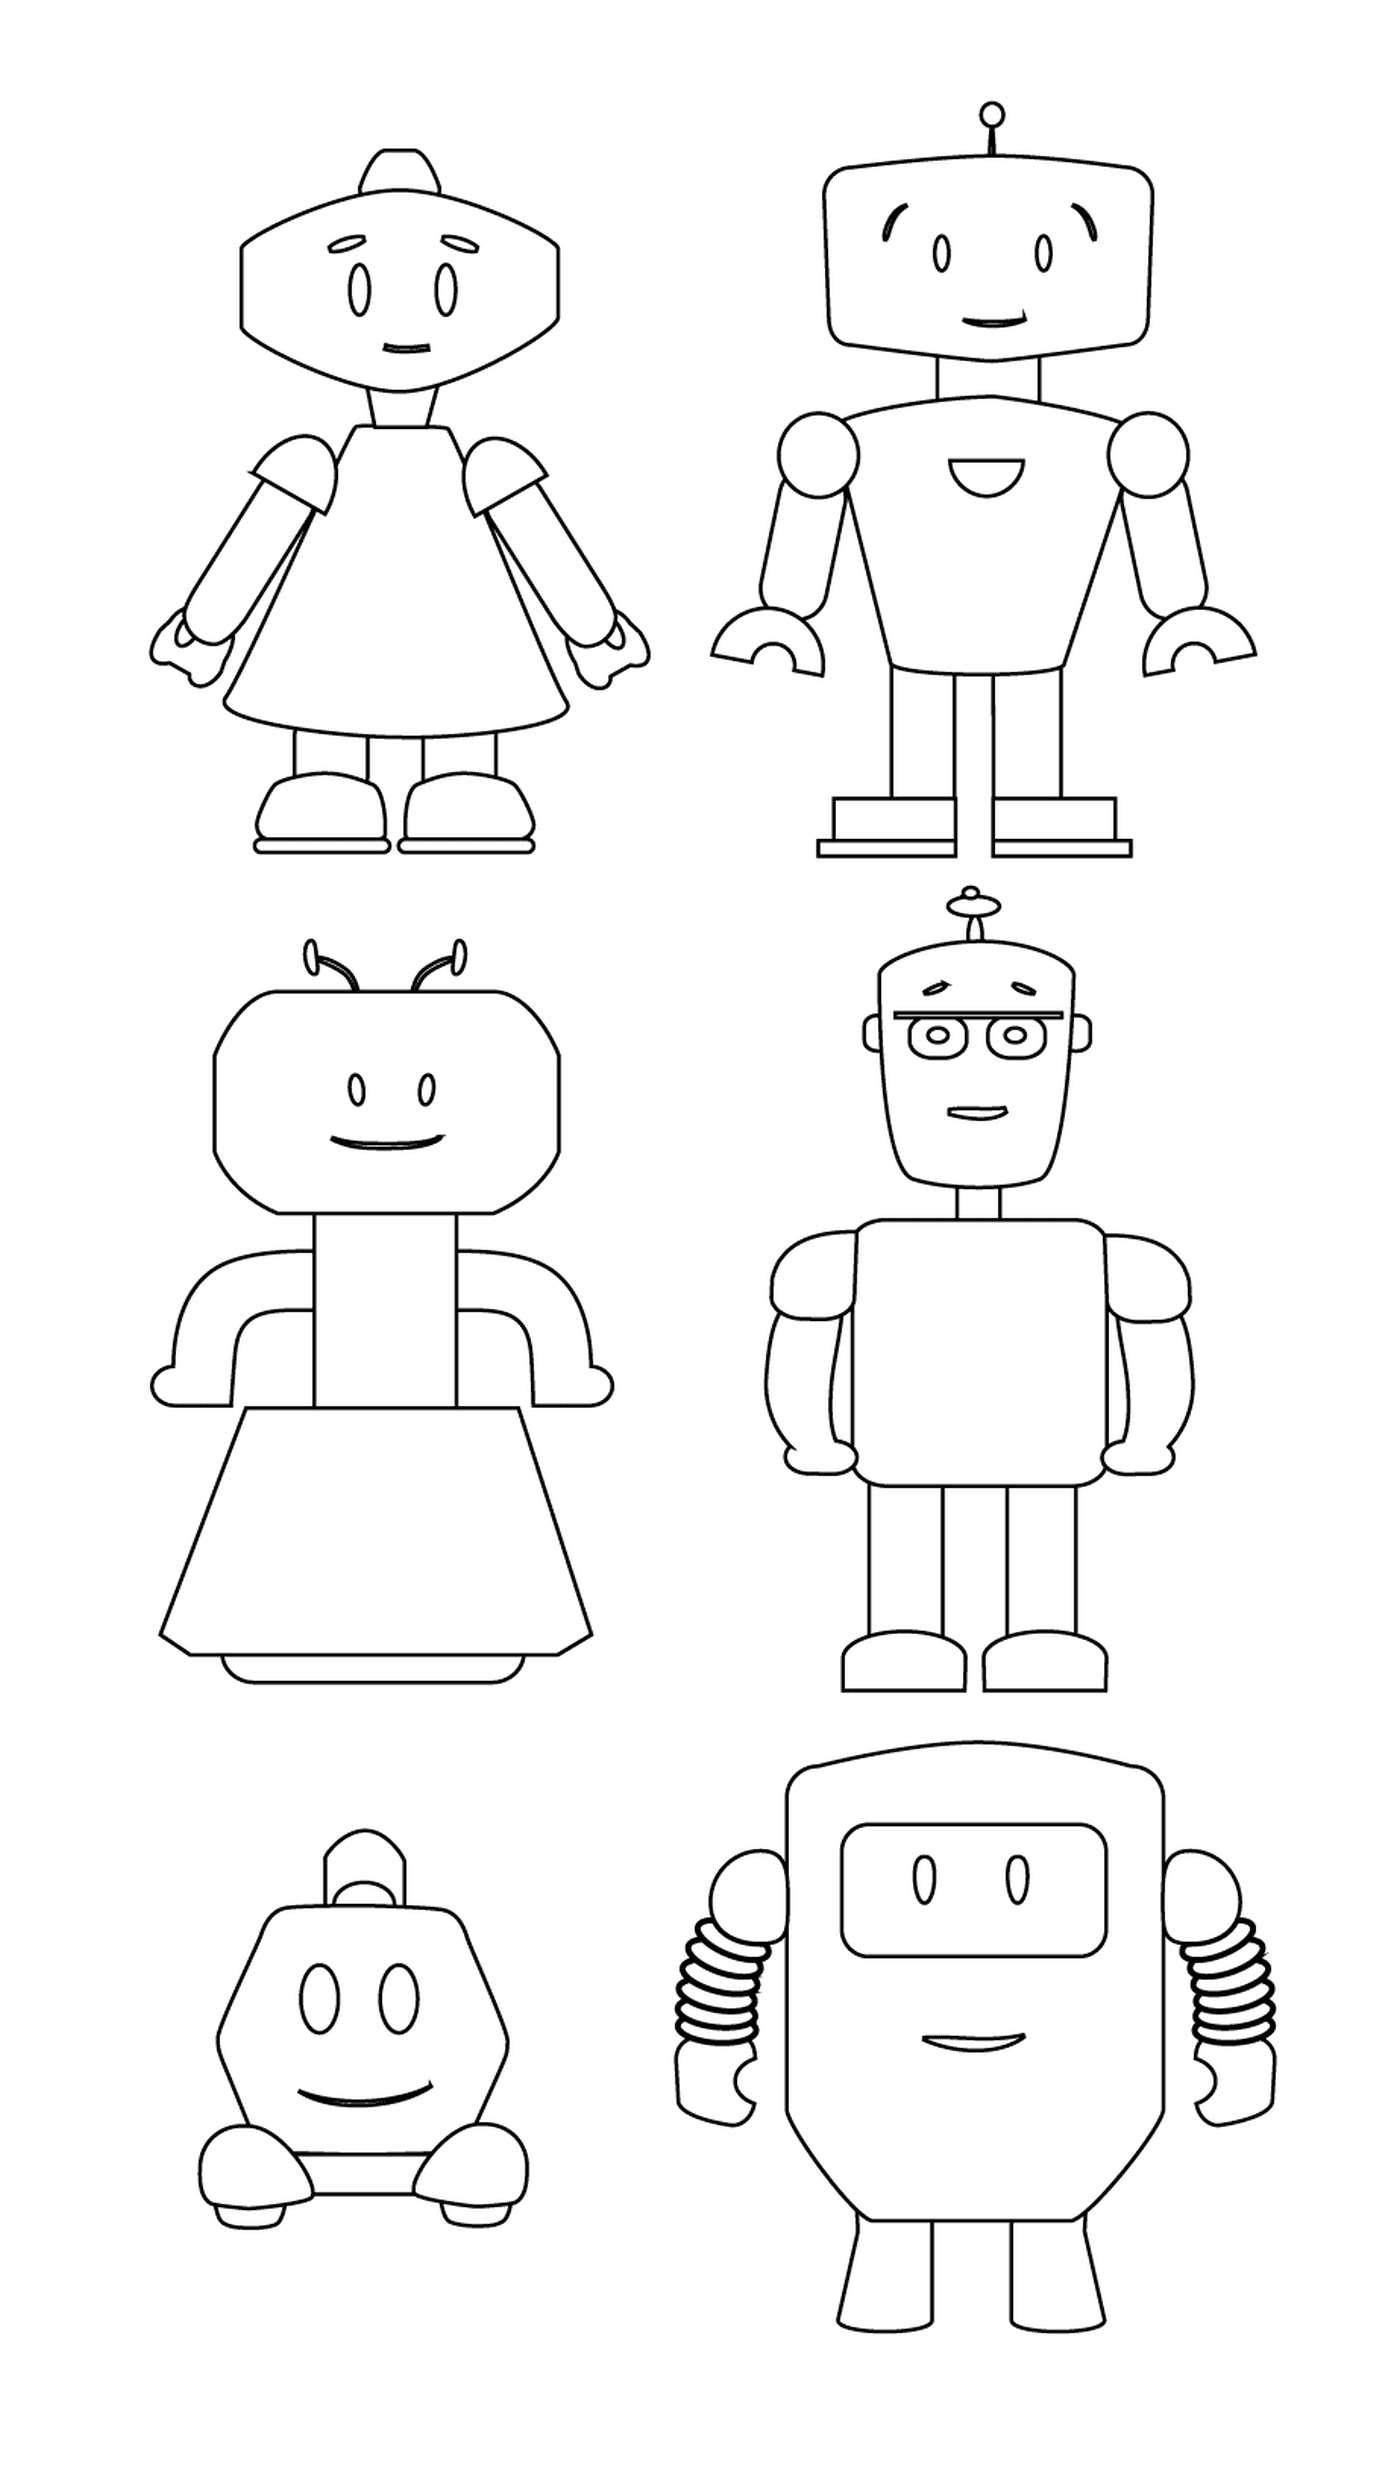  Familie von liebenswerten Robotern 